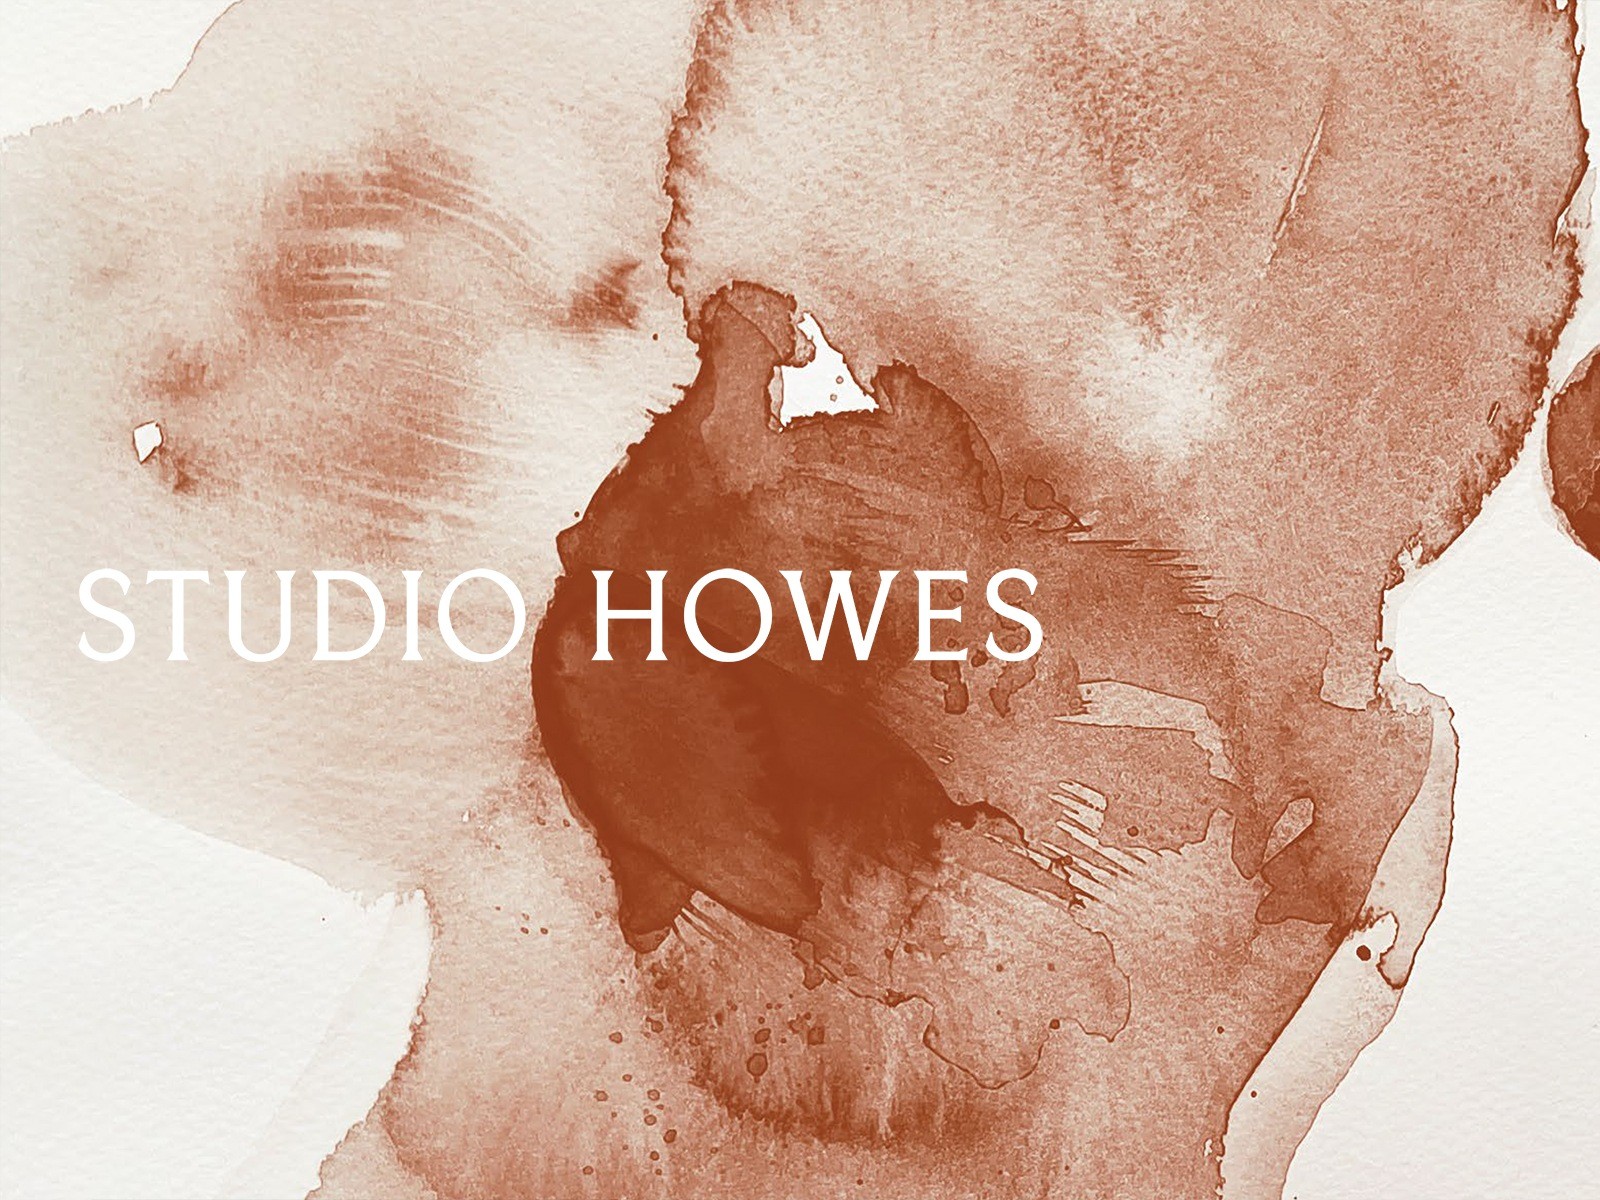 Studio Howes – The Studio